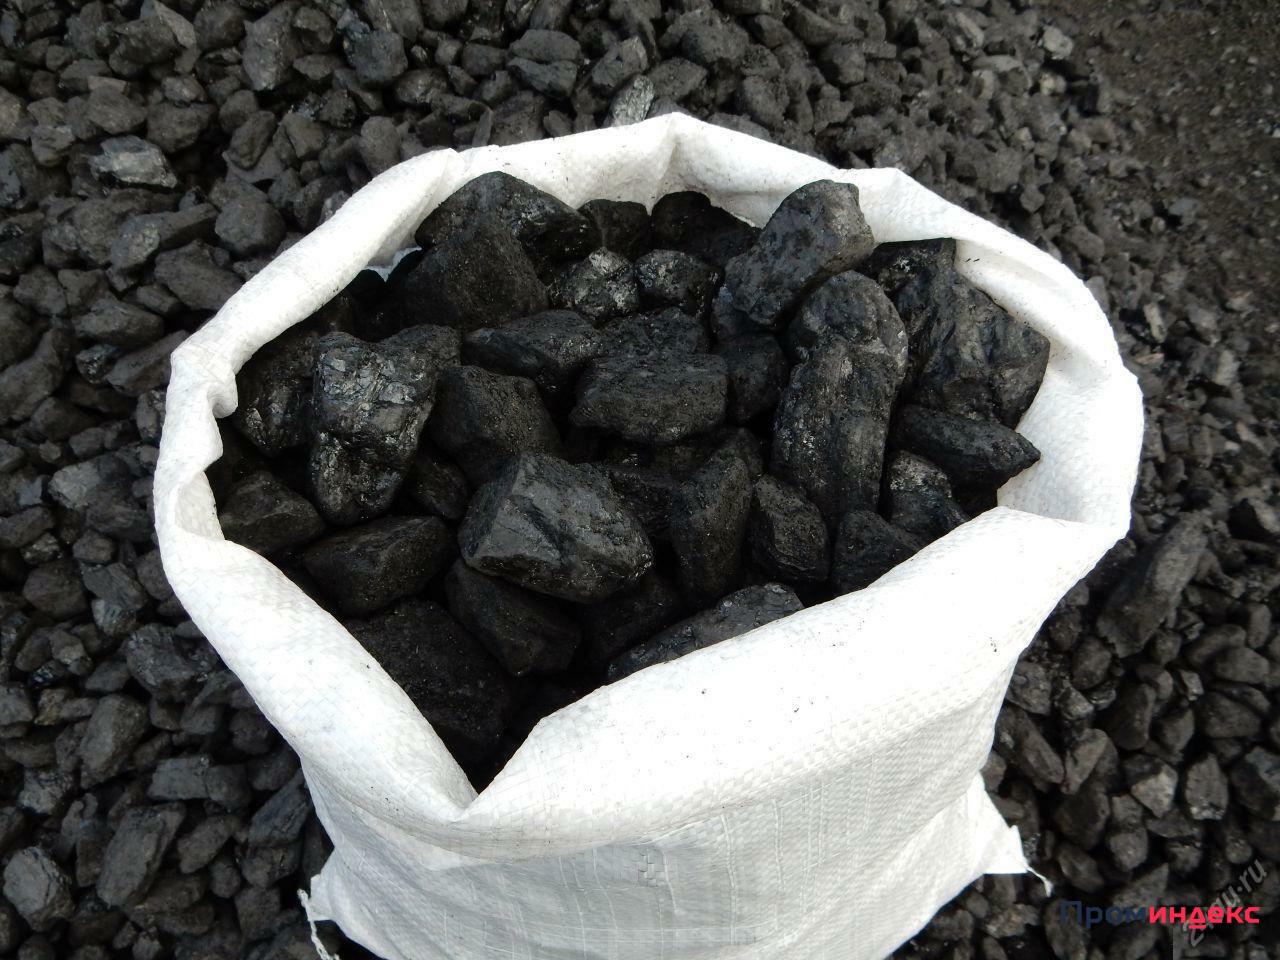 Купить уголь в мешках в новосибирске. Уголь каменный марки ДПК. Уголь ДПК 200. Уголь ДПК 50-200мм. Уголь бурый каменный антрацит.